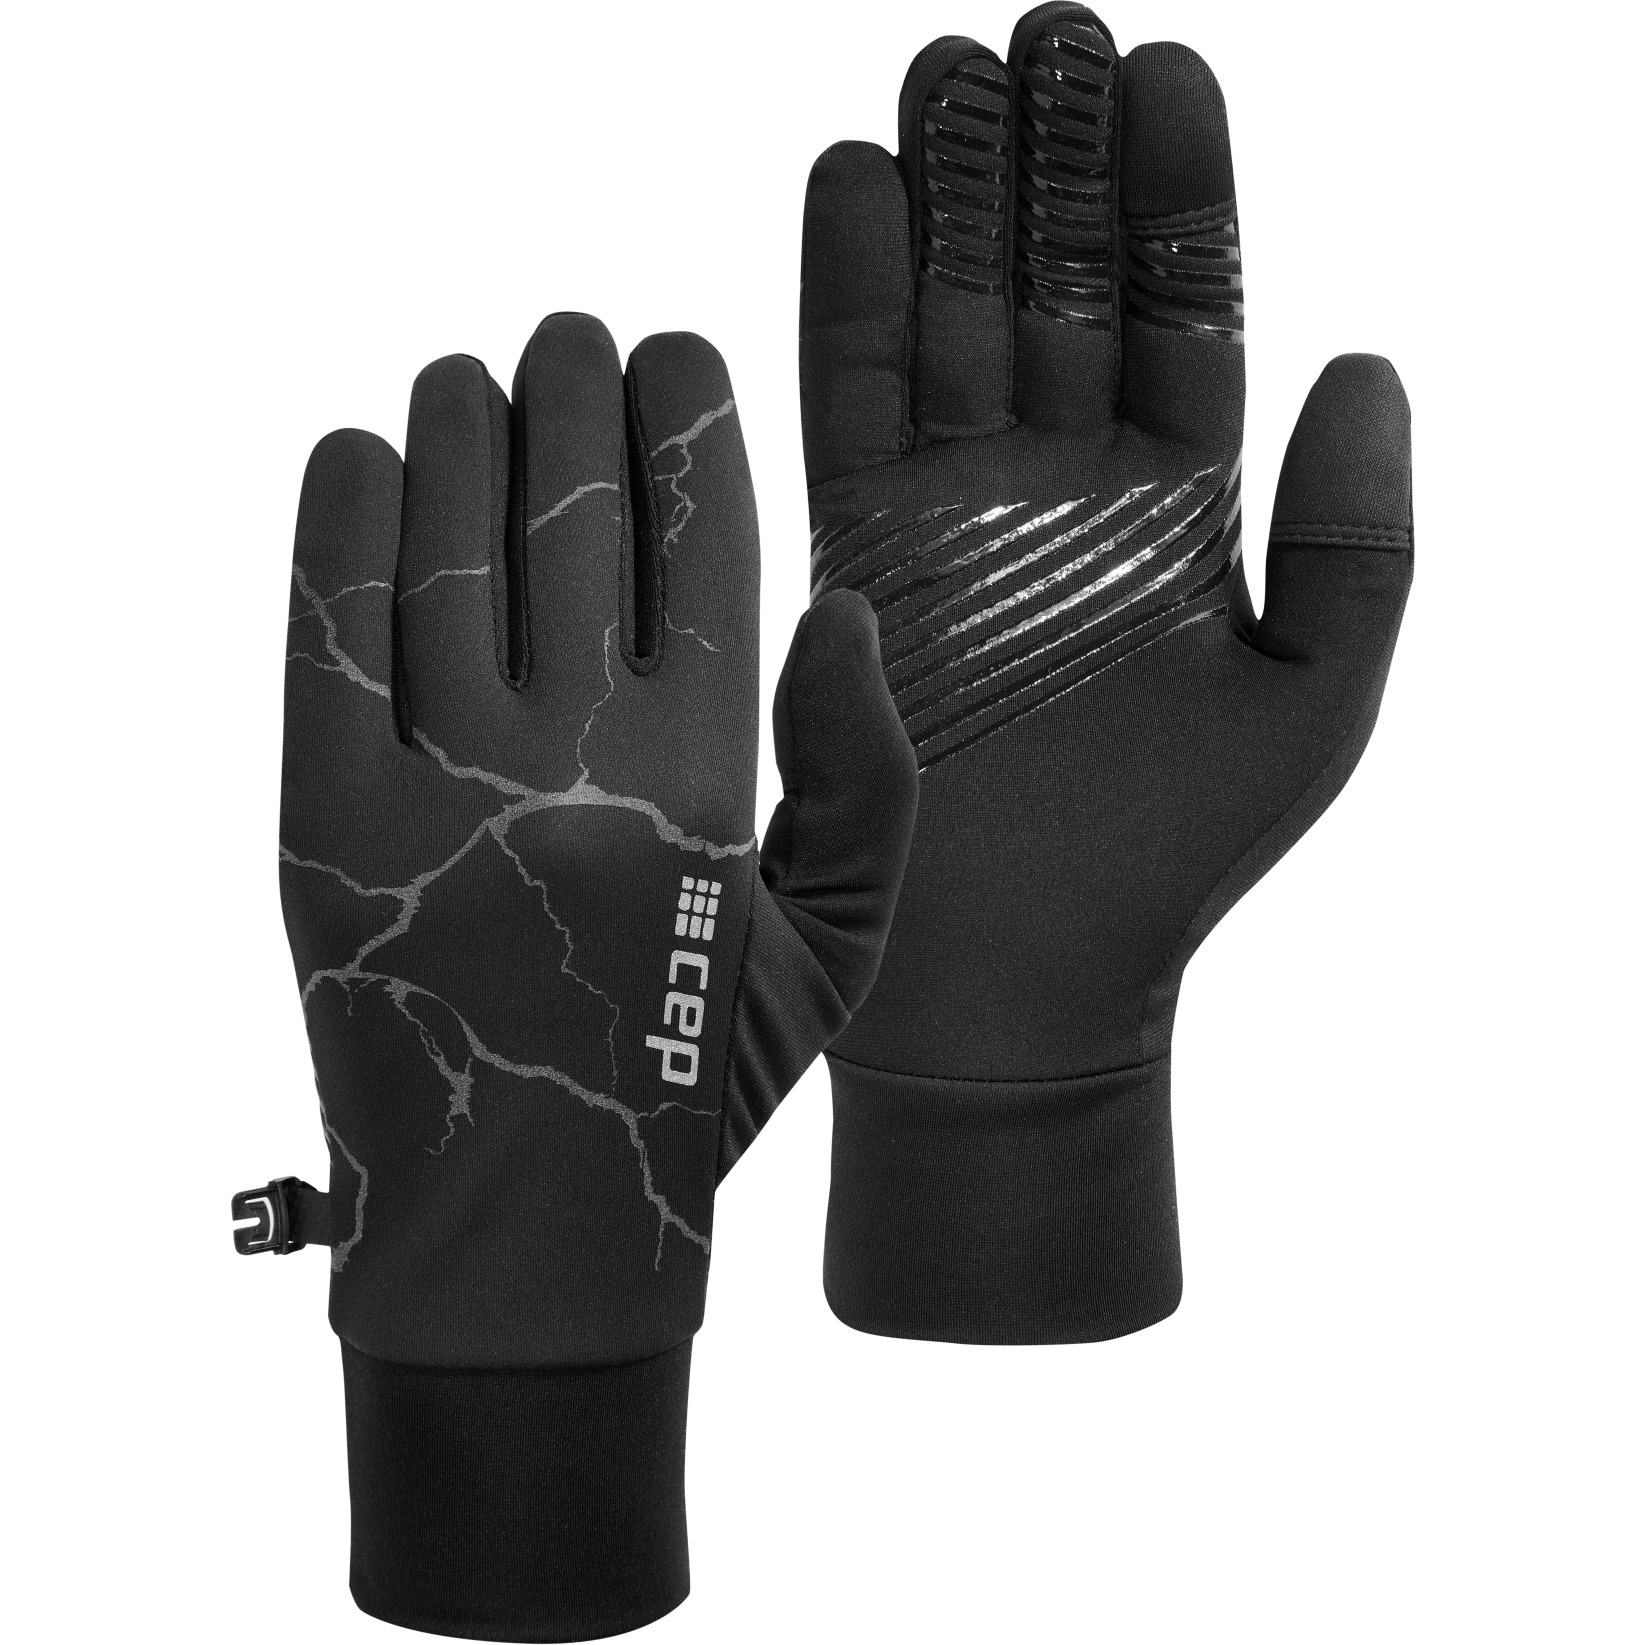 Productfoto van CEP Reflective Handschoenen - zwart